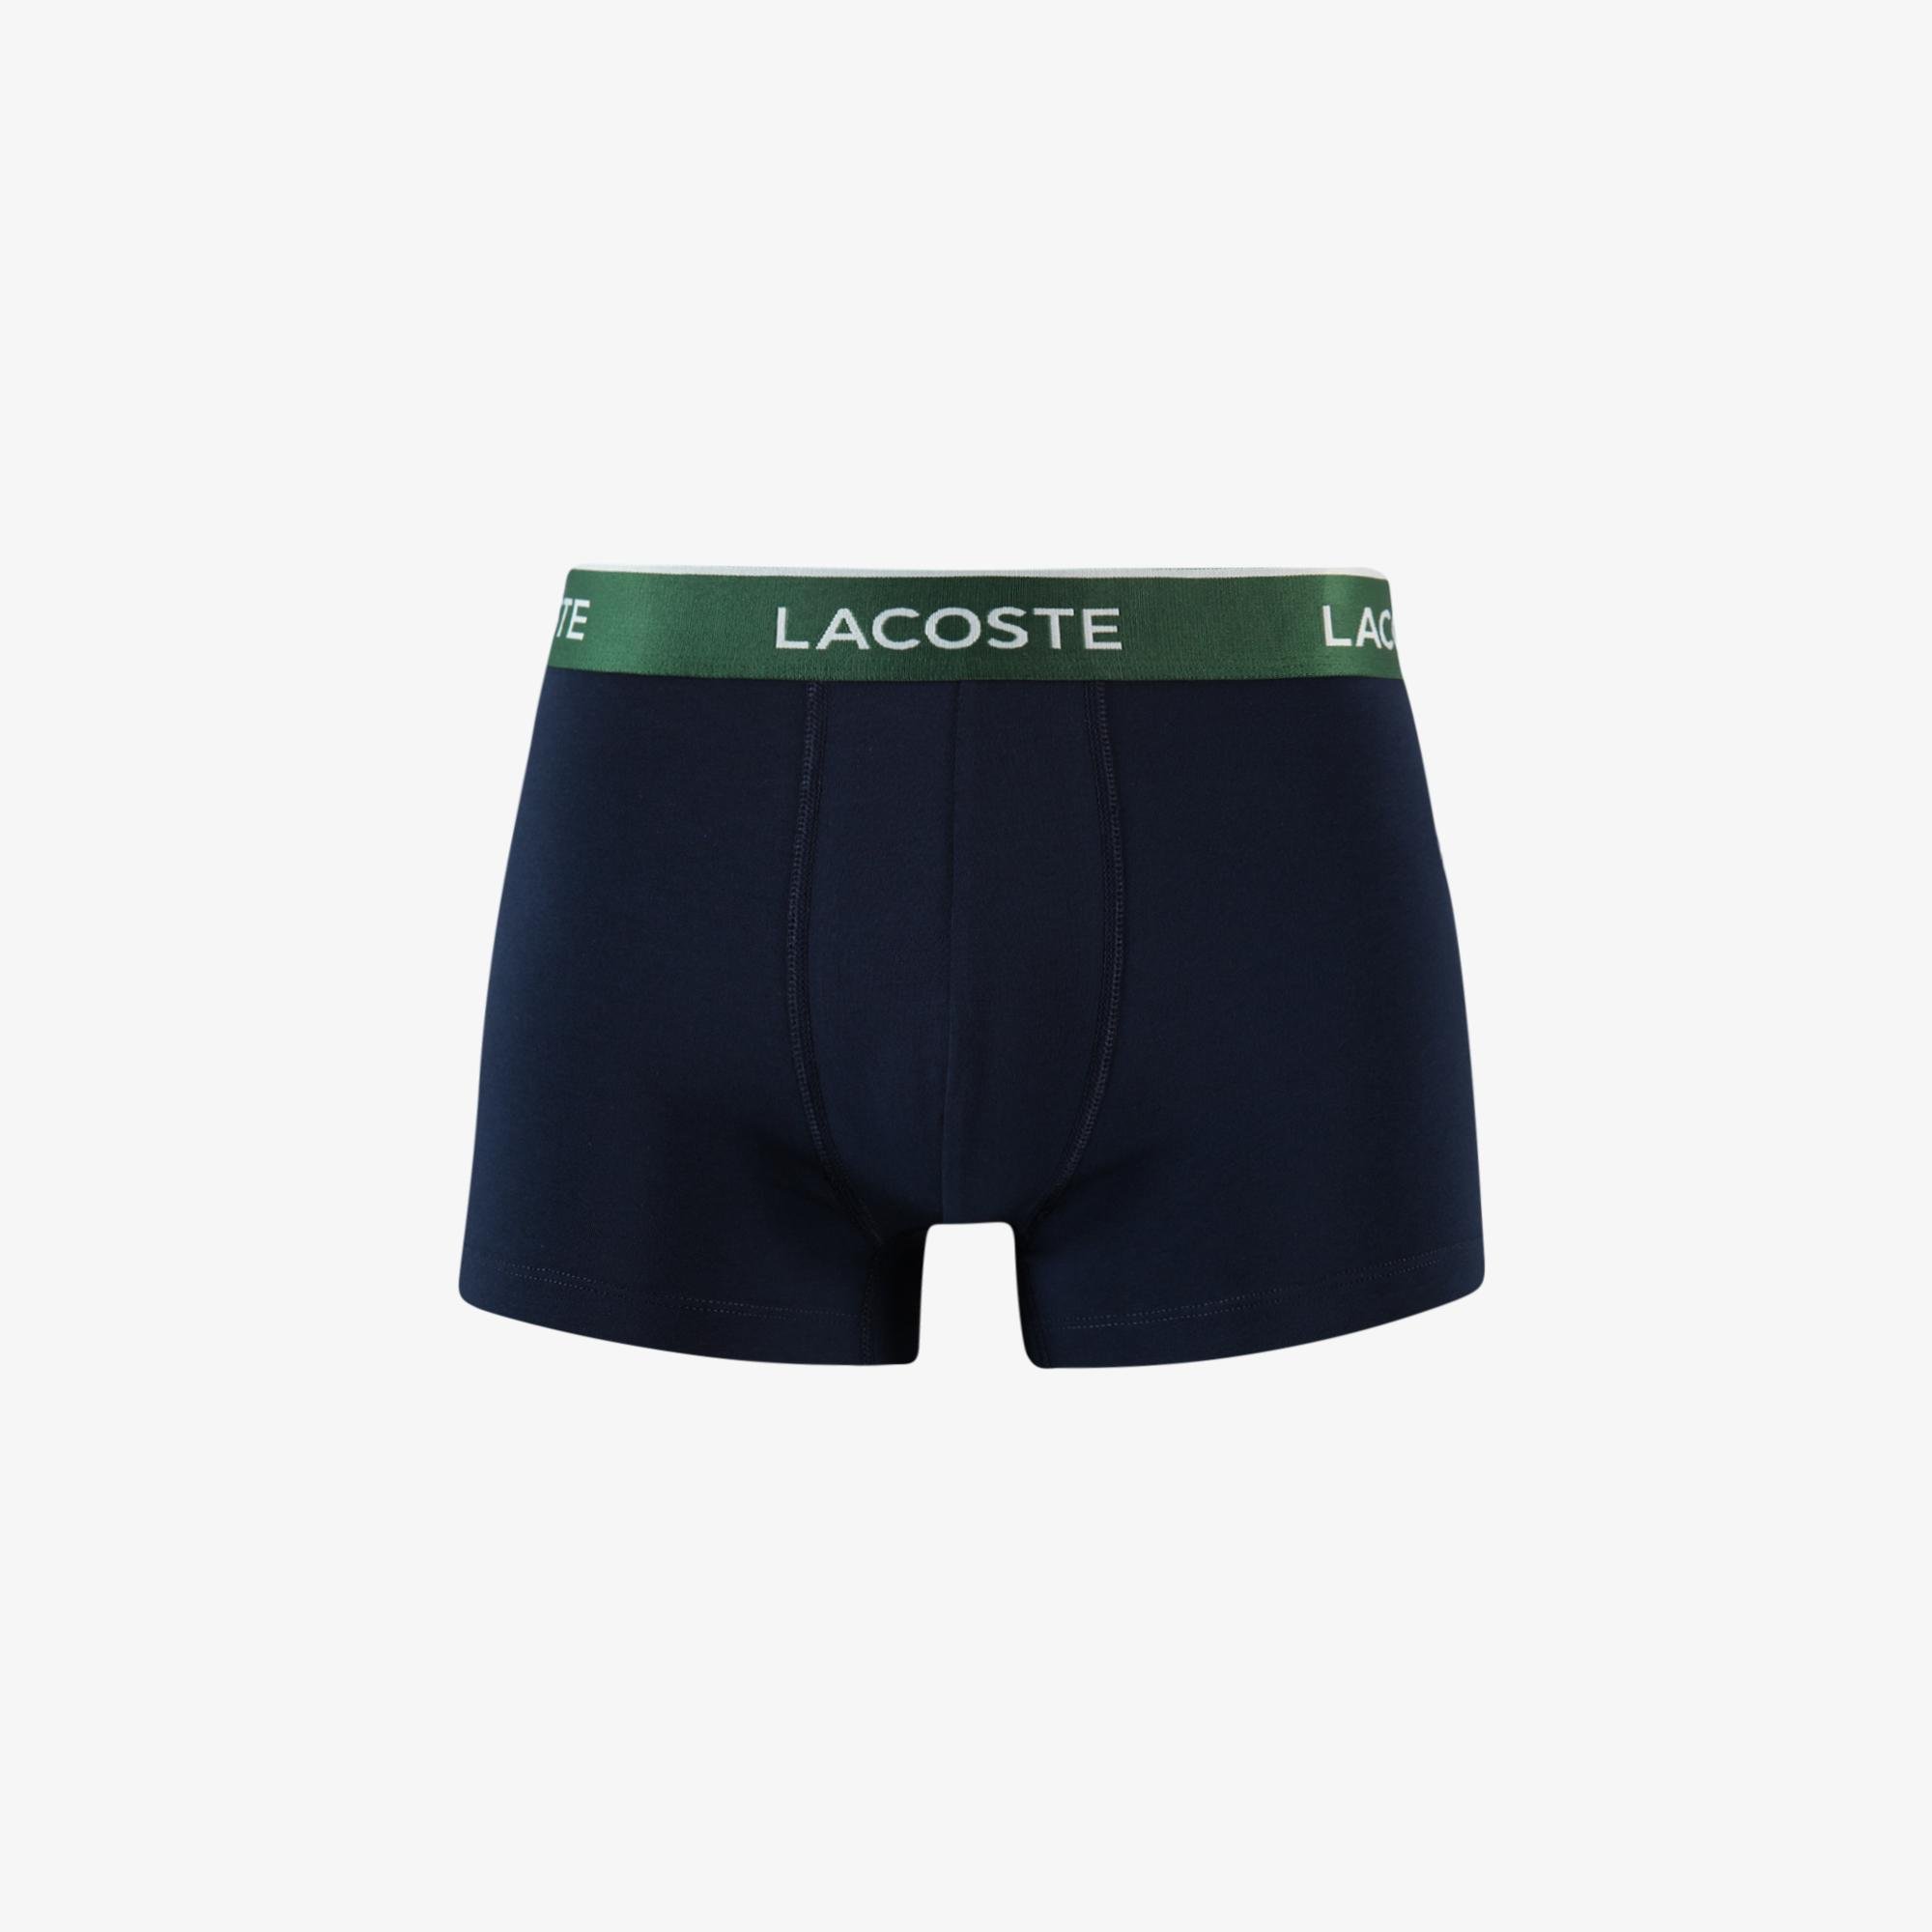 Lacoste men's boxer shorts, set of 3